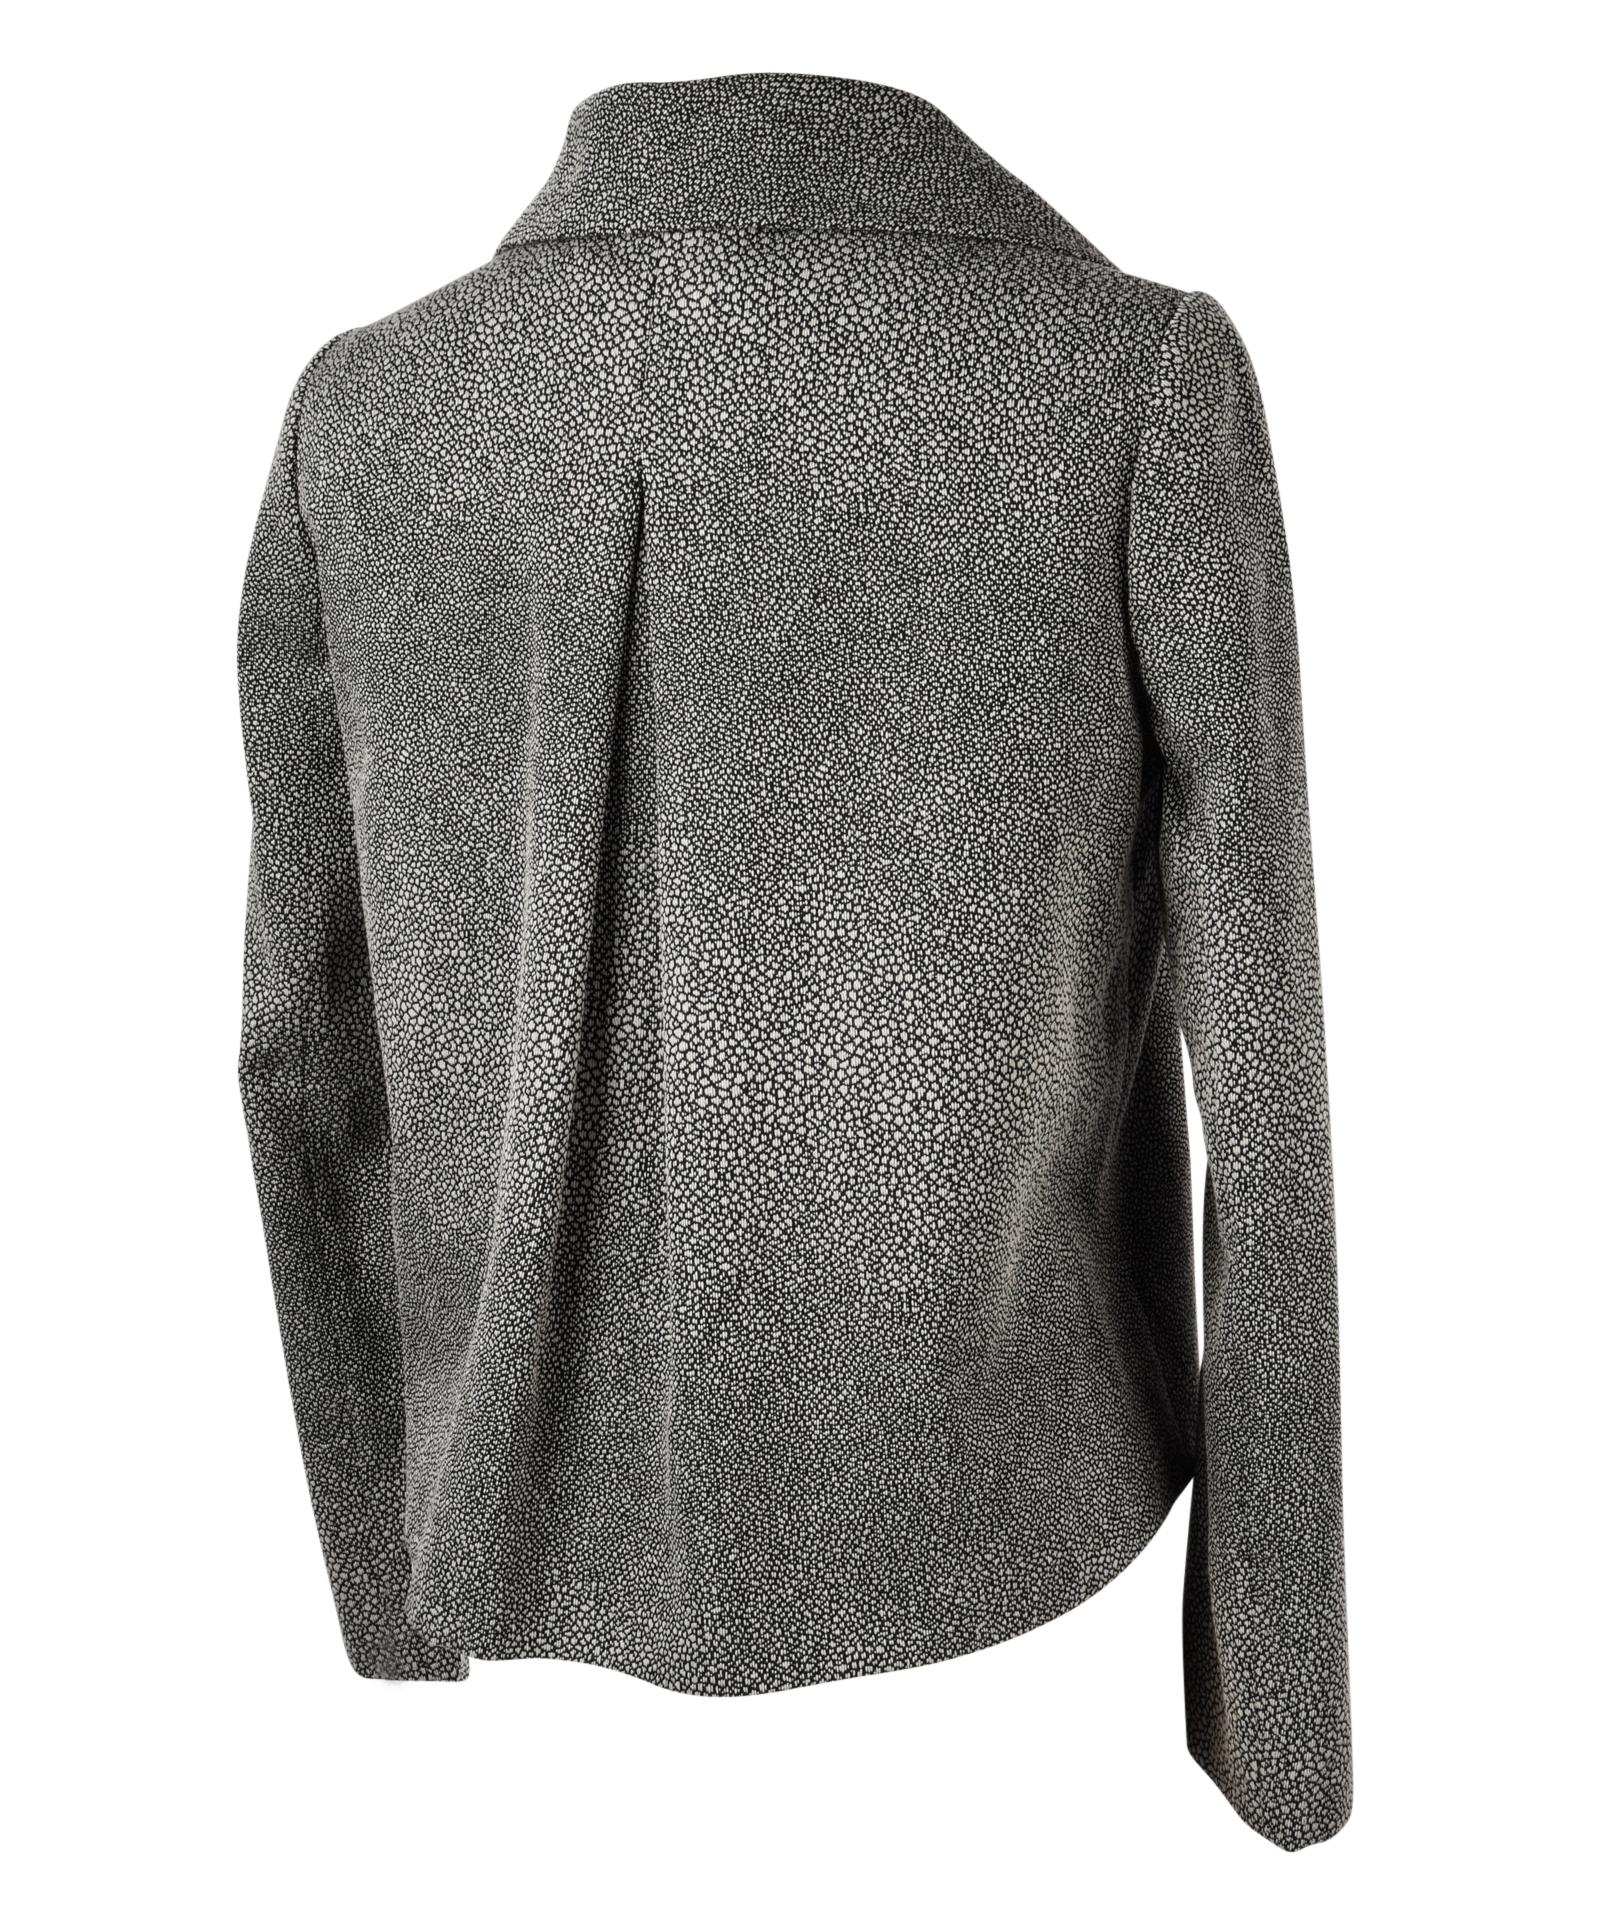 Giorgio Armani Jacket Unique Stingray Print Black / Gray 38 / 6 New 5